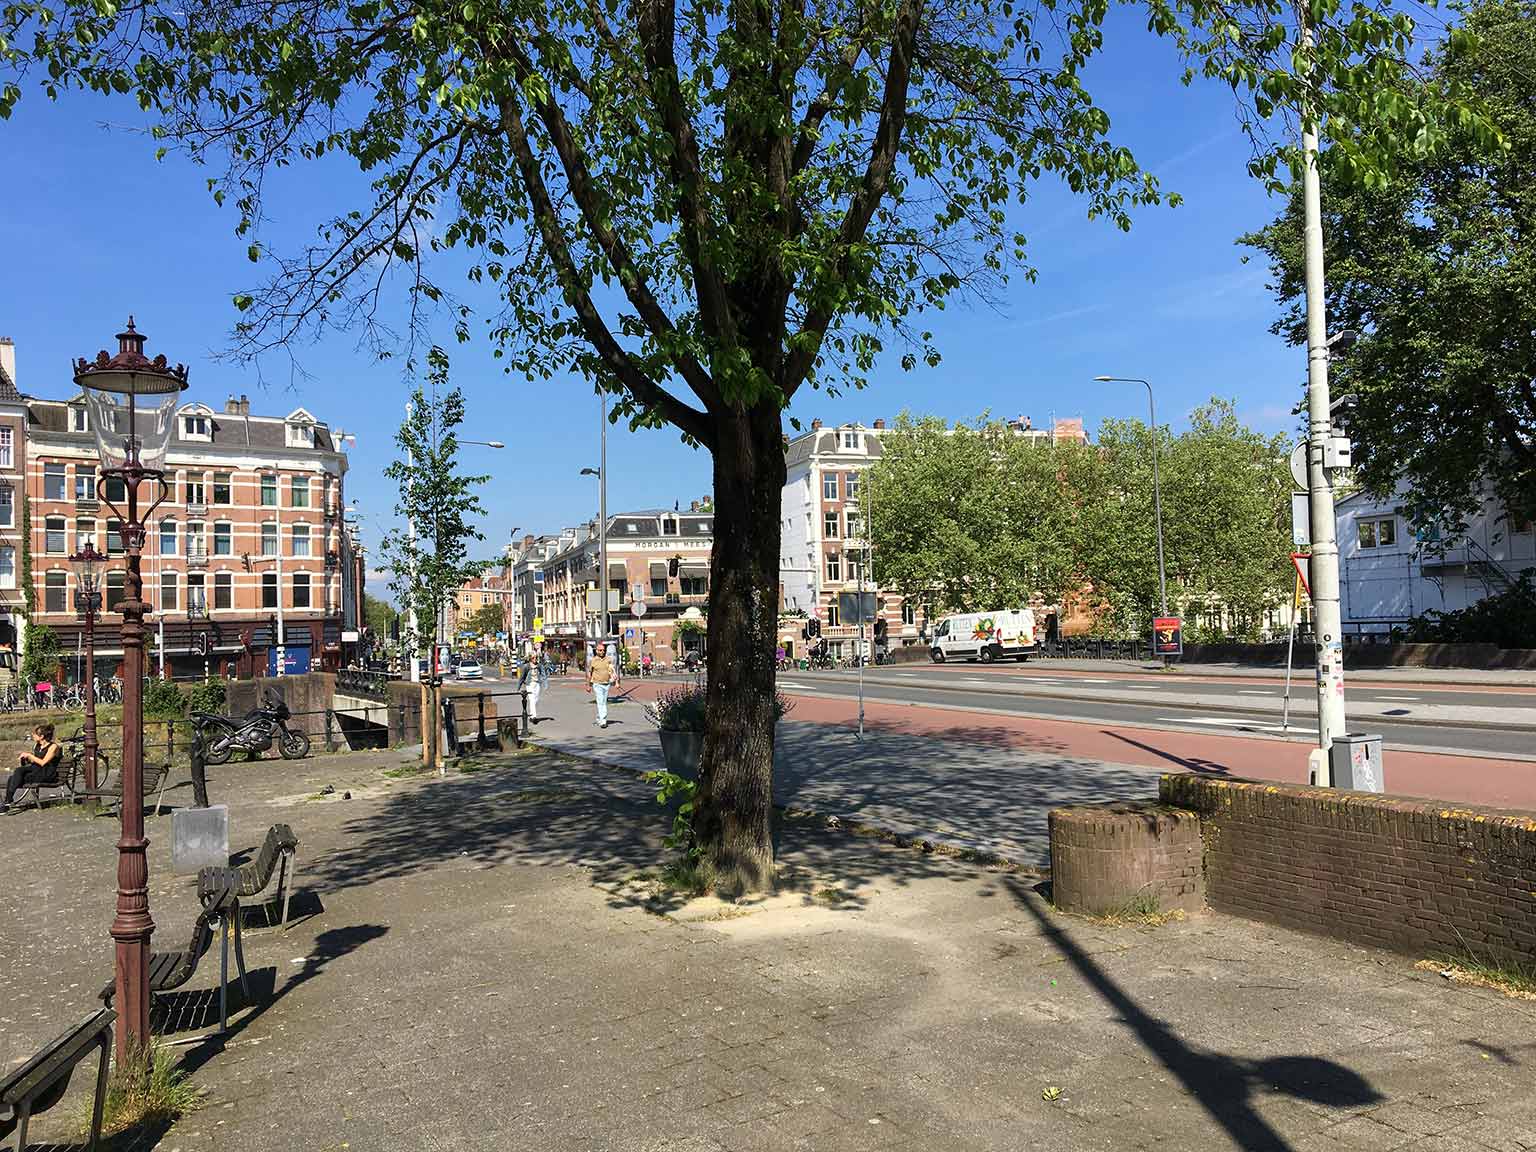 Raampoort, Amsterdam, seen from Bullebakssluis